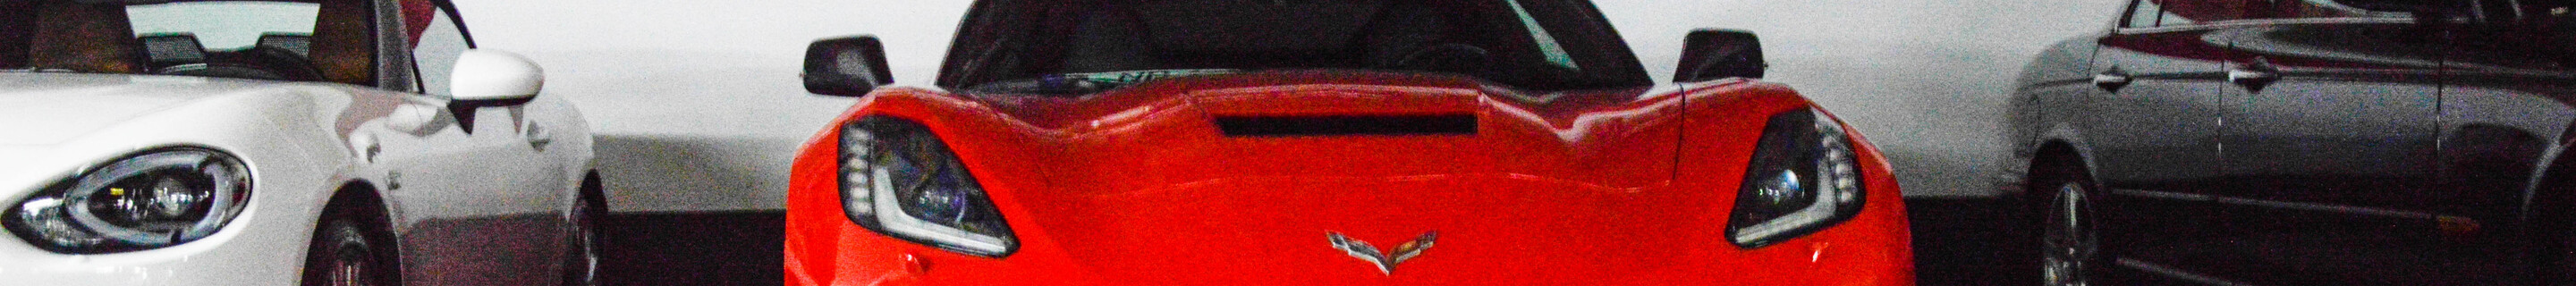 Chevrolet Corvette C7 Stingray